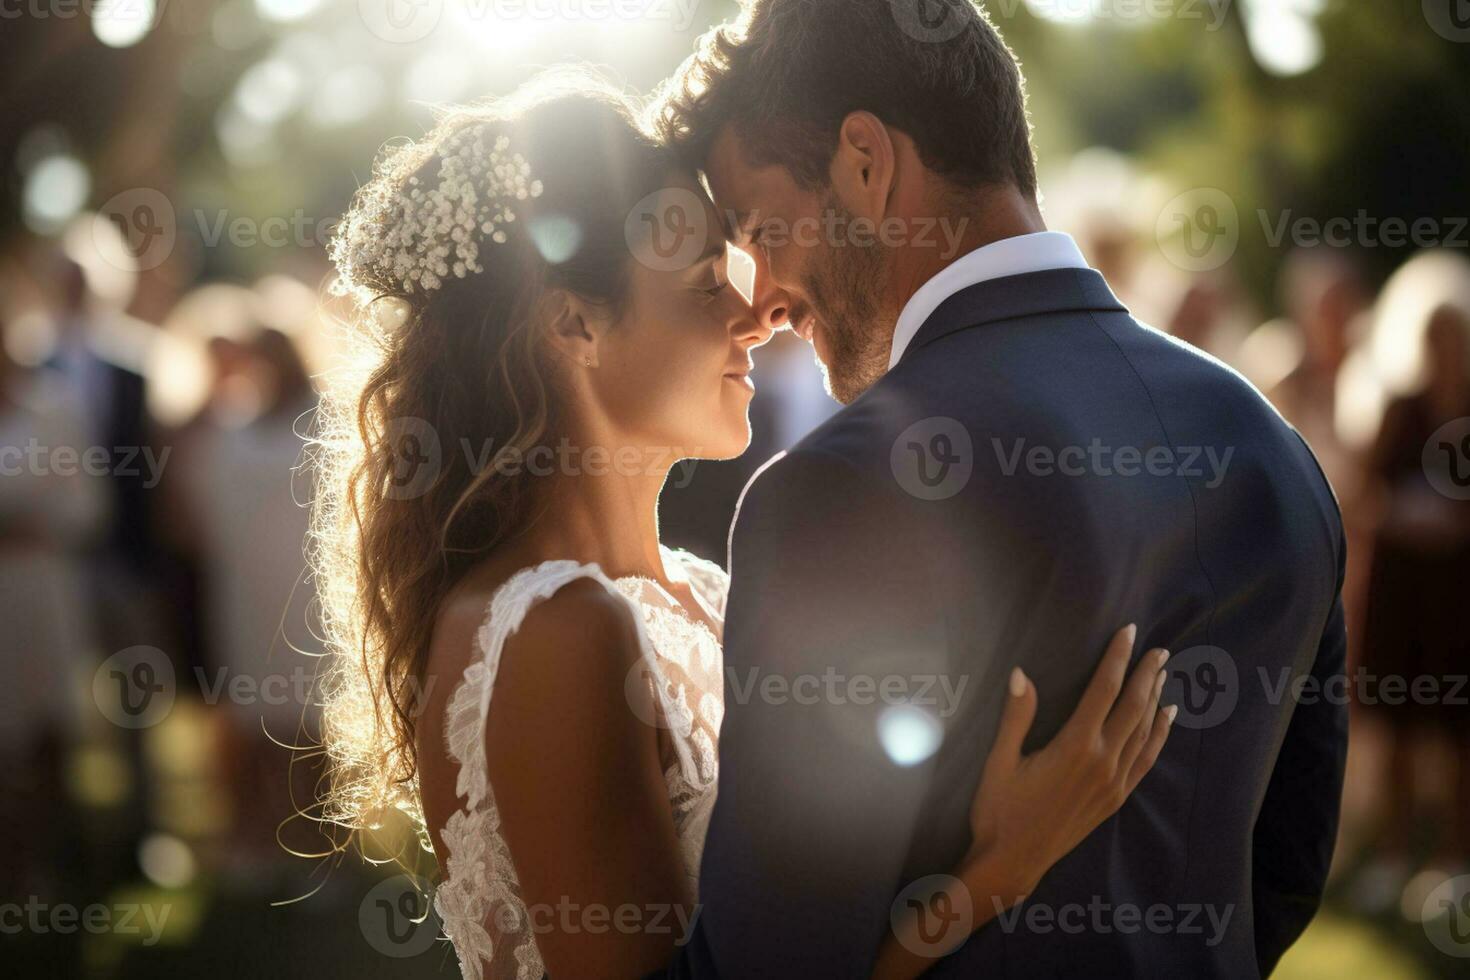 brudgum och brud i bröllop klänningar på en fullt med folk bakgrund foto